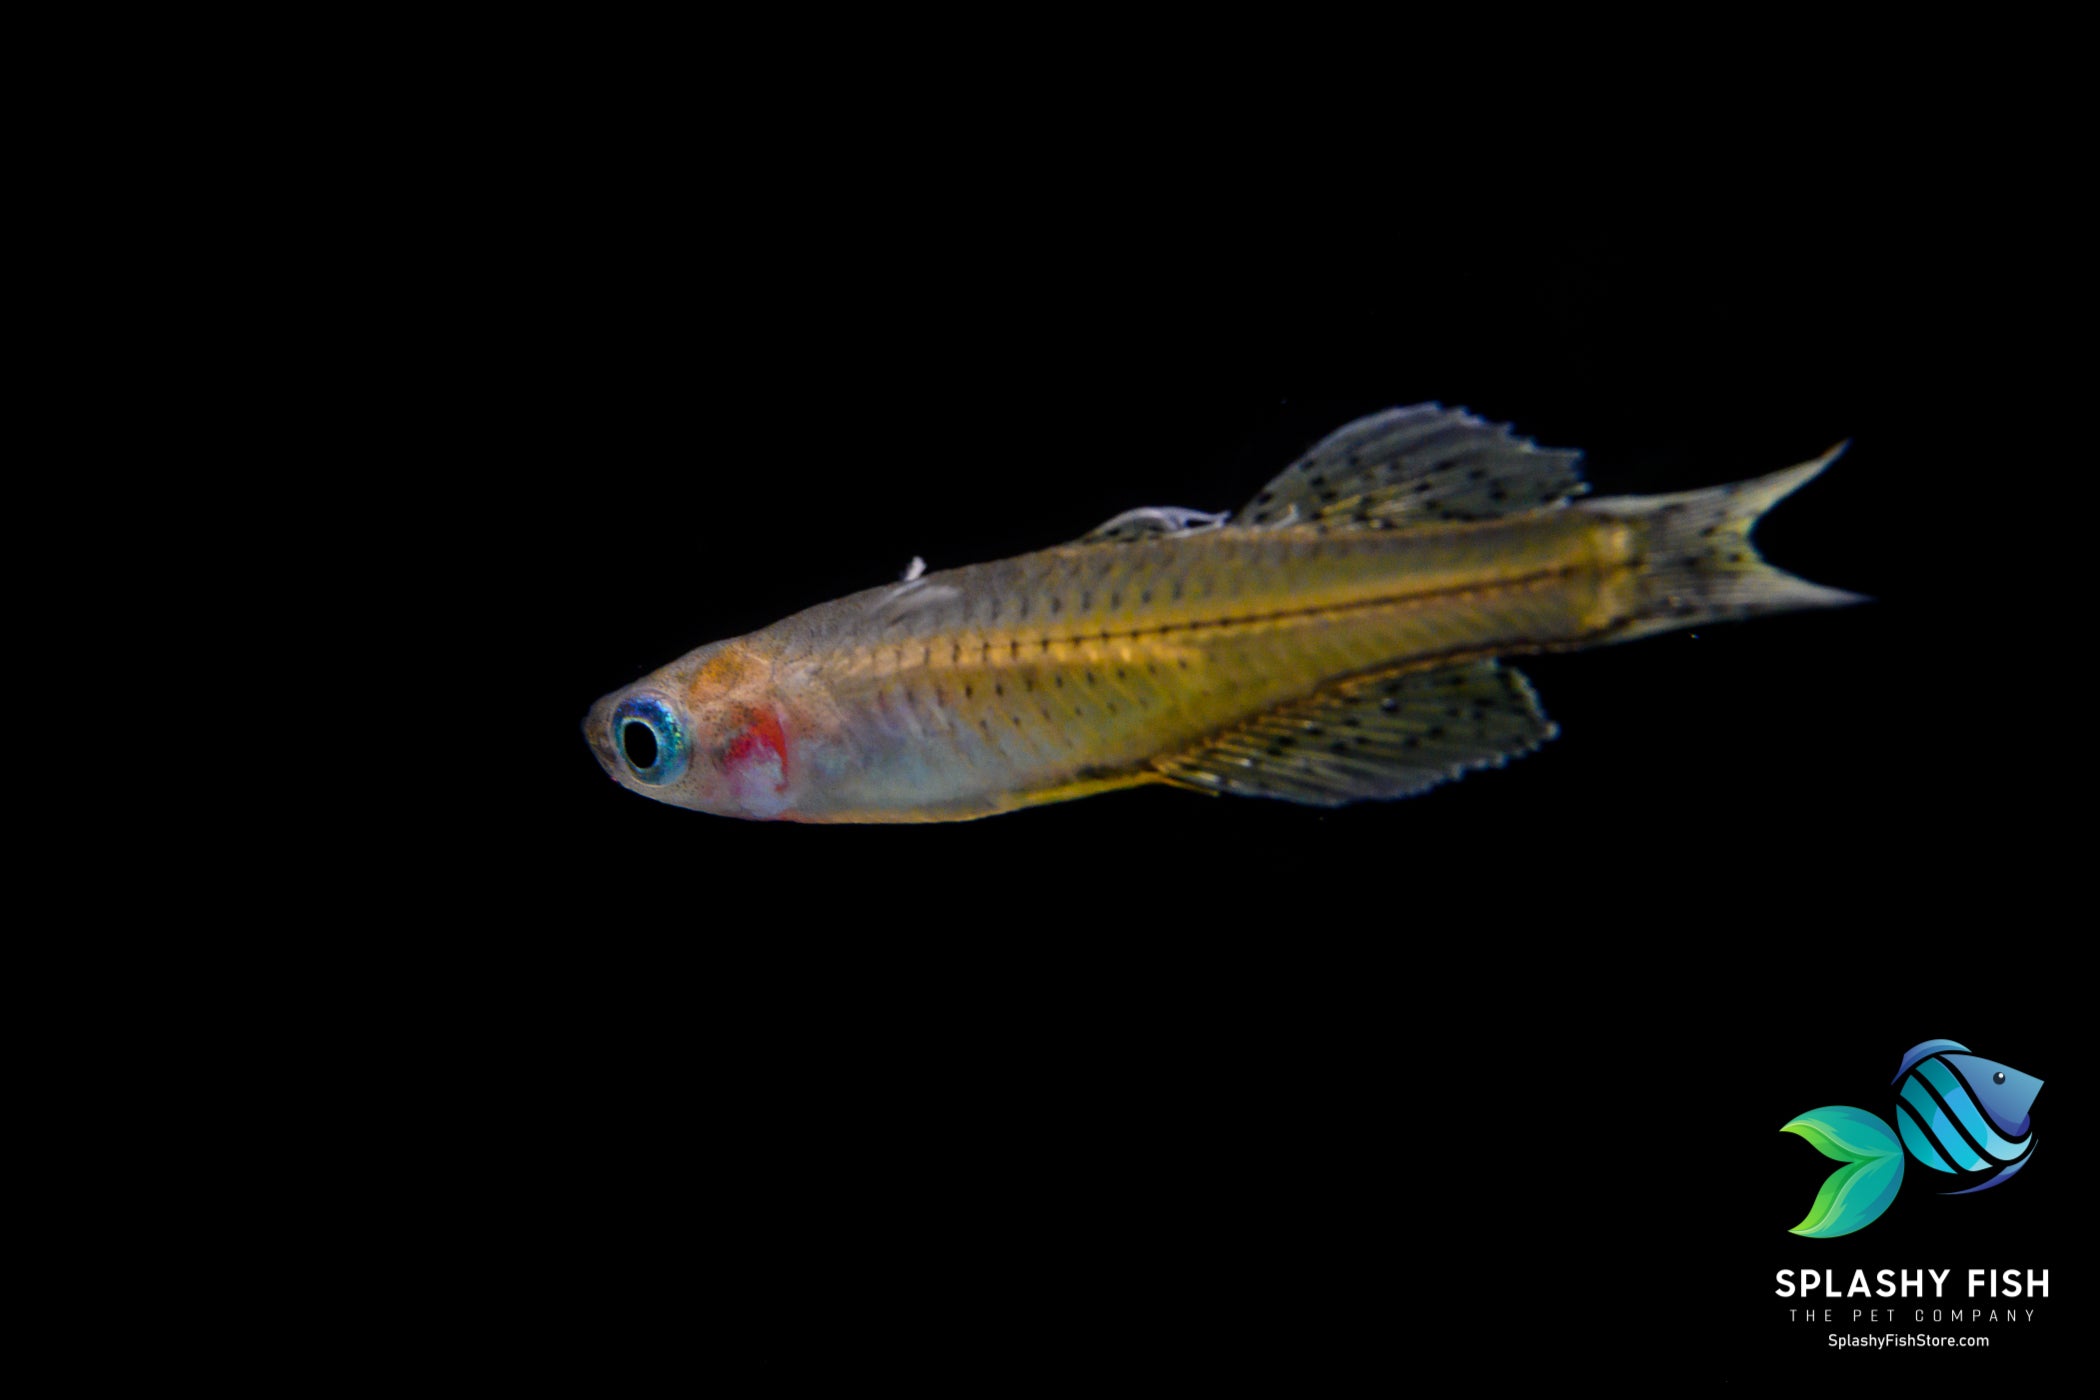 Male Blue Eye Dwarf Rainbow Fish